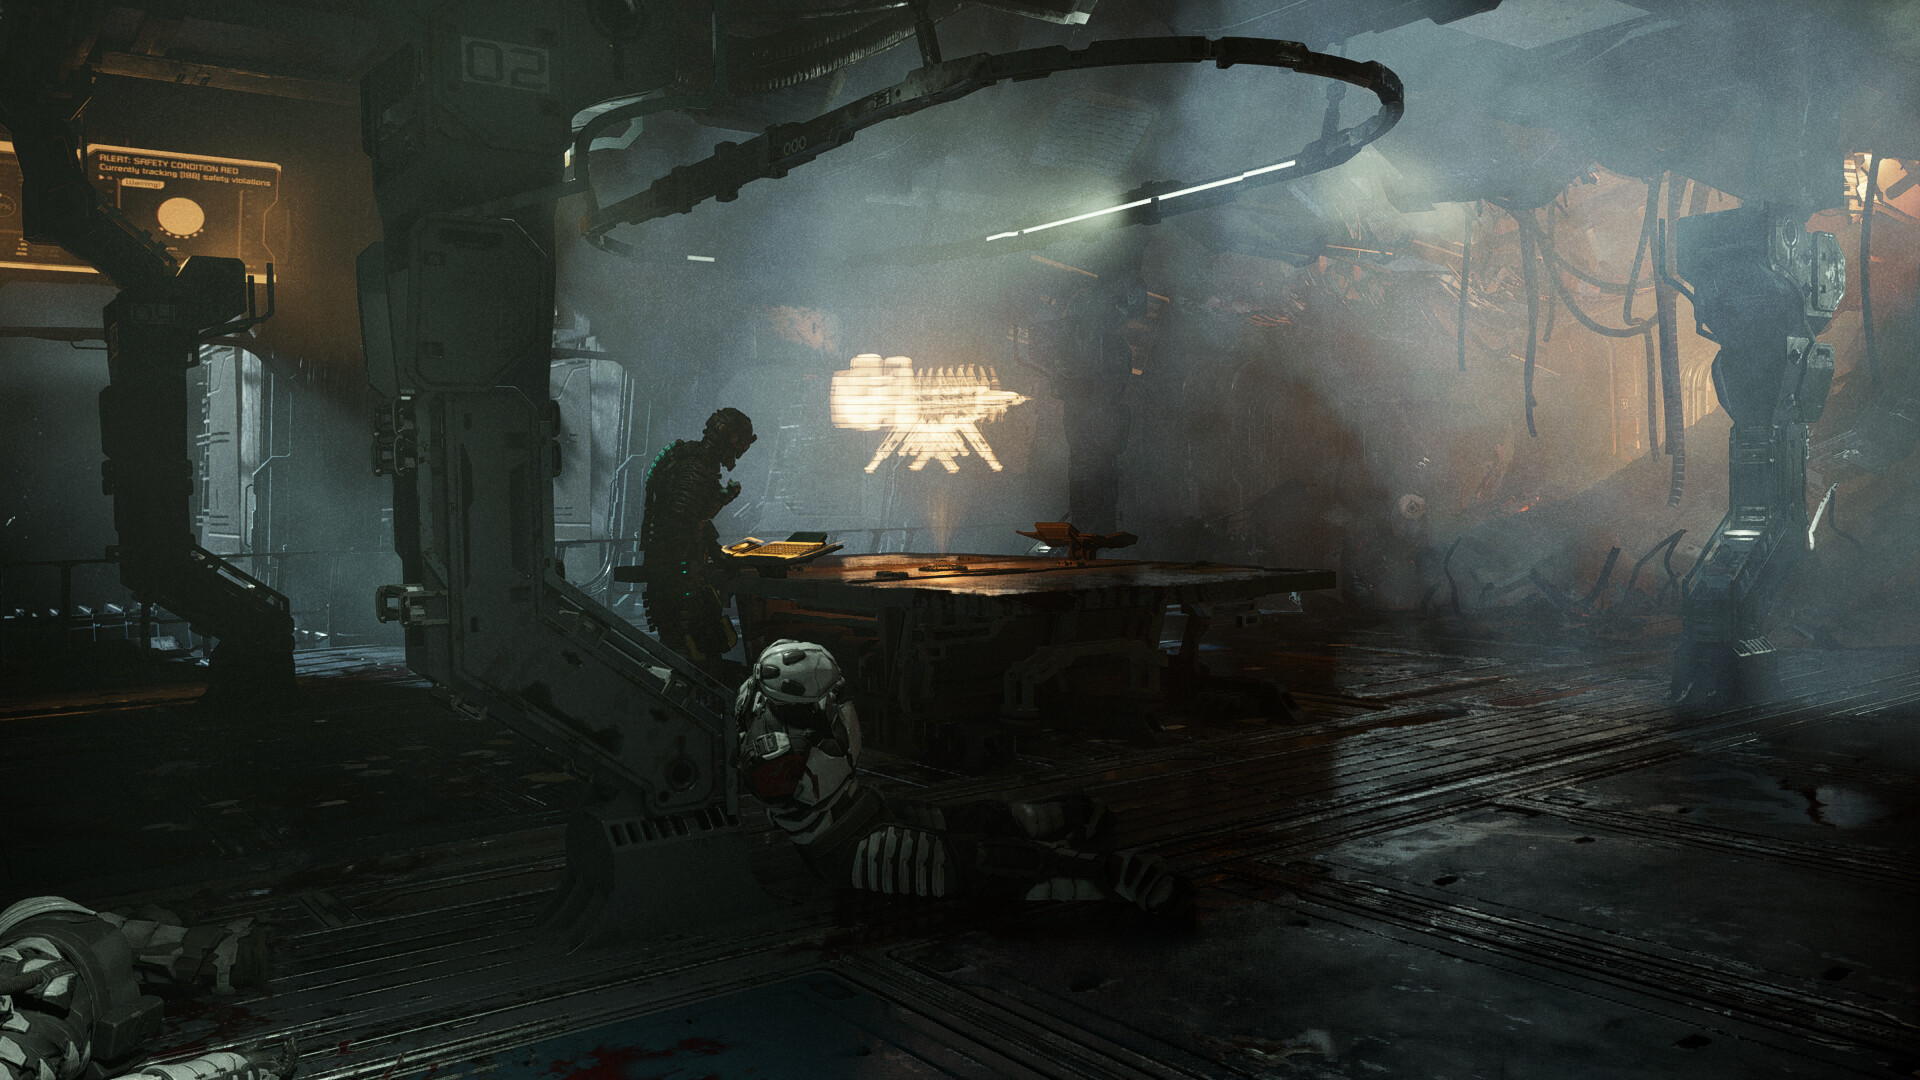 Steam lança teste grátis do jogo Dead Space Remake